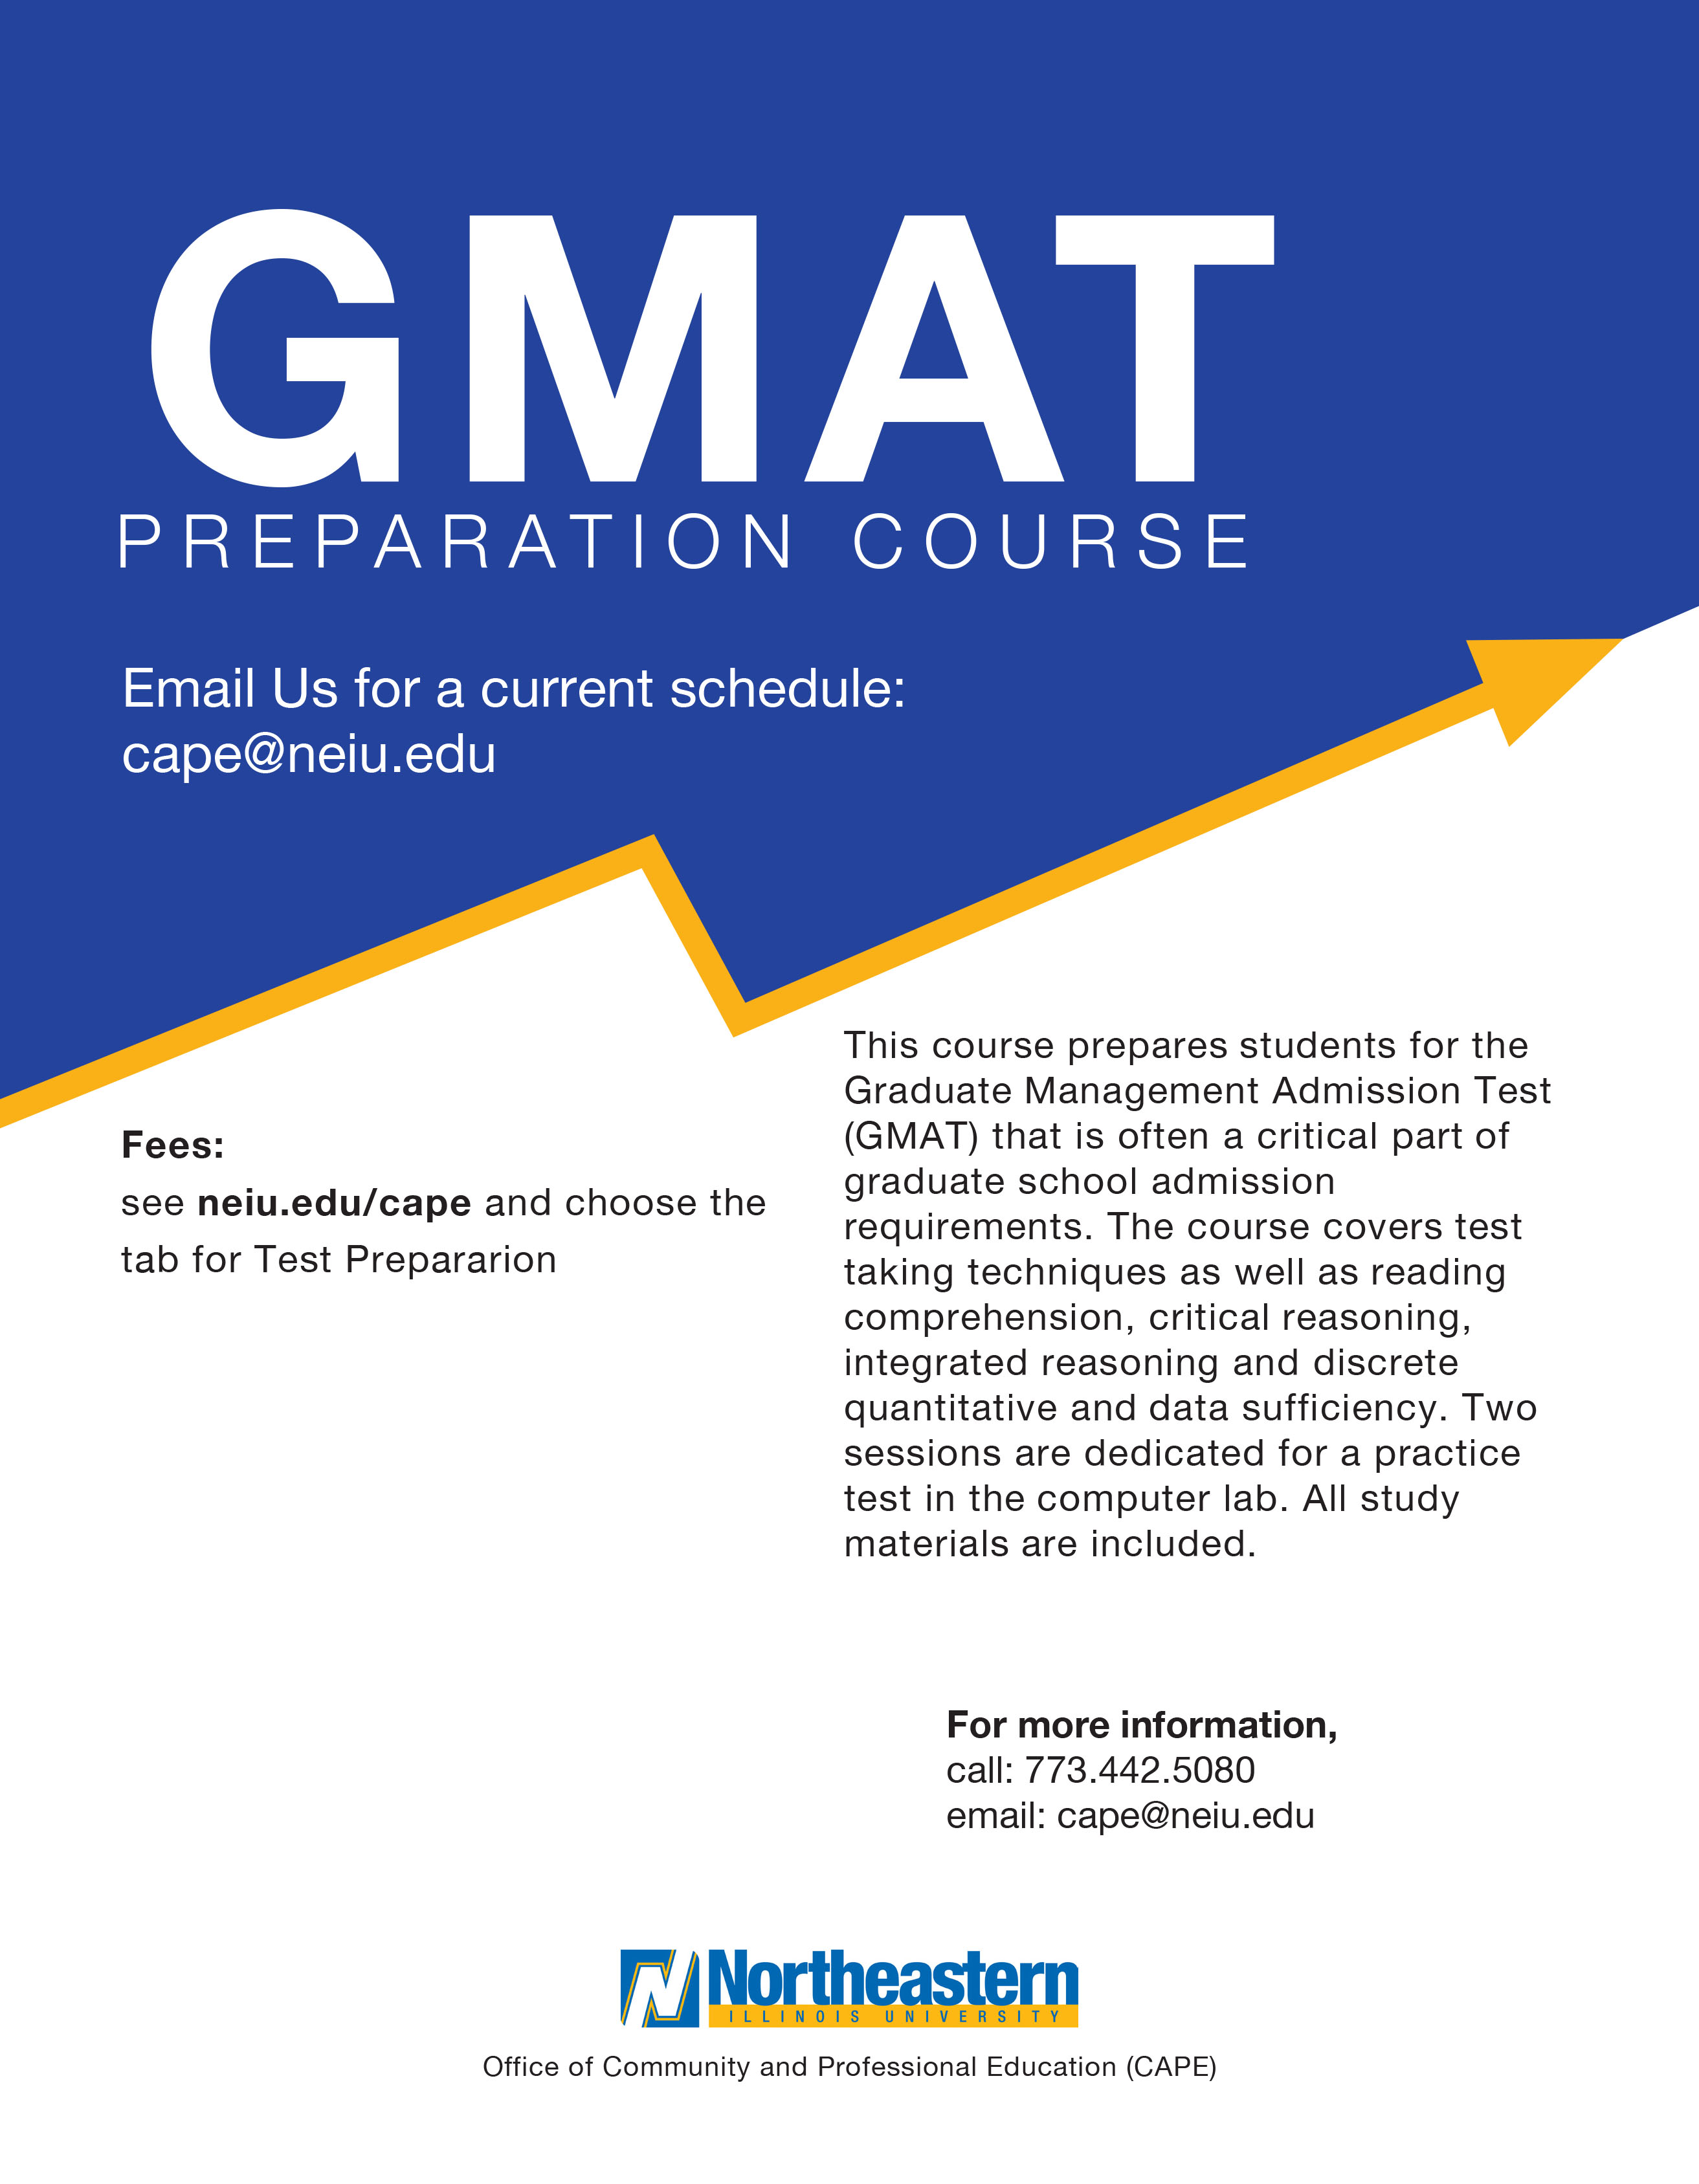 GMAT Preparation Course Flyer